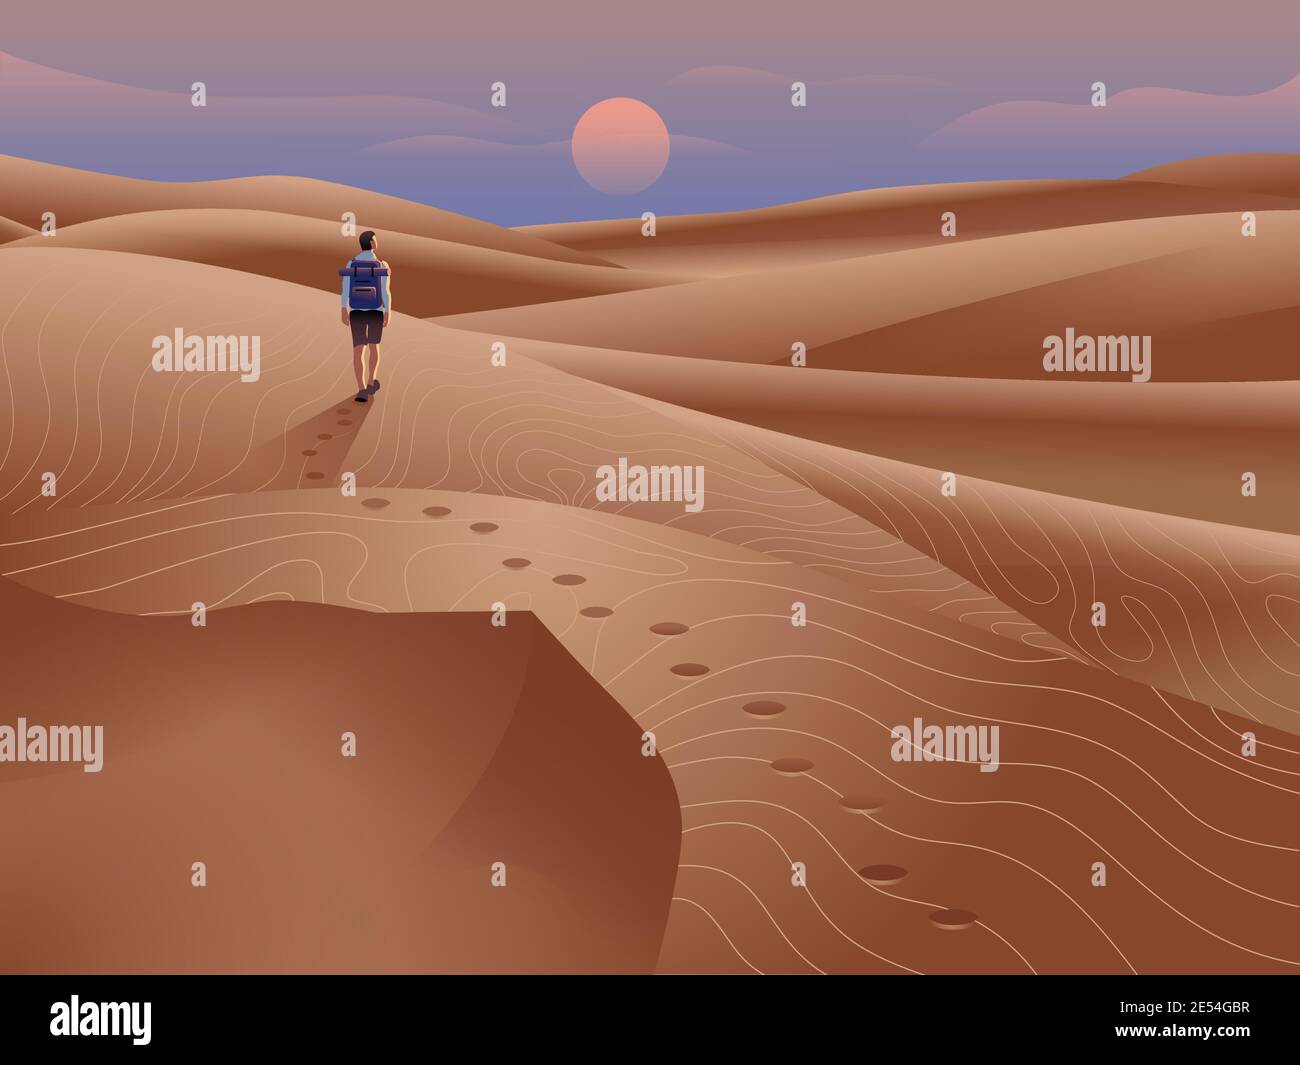 Tourisme dans le désert illustration. Paysage de dunes de sable avec ciel et soleil en soirée à l'horizon. Homme voyageant seul avec un sac à dos. Illustration de Vecteur